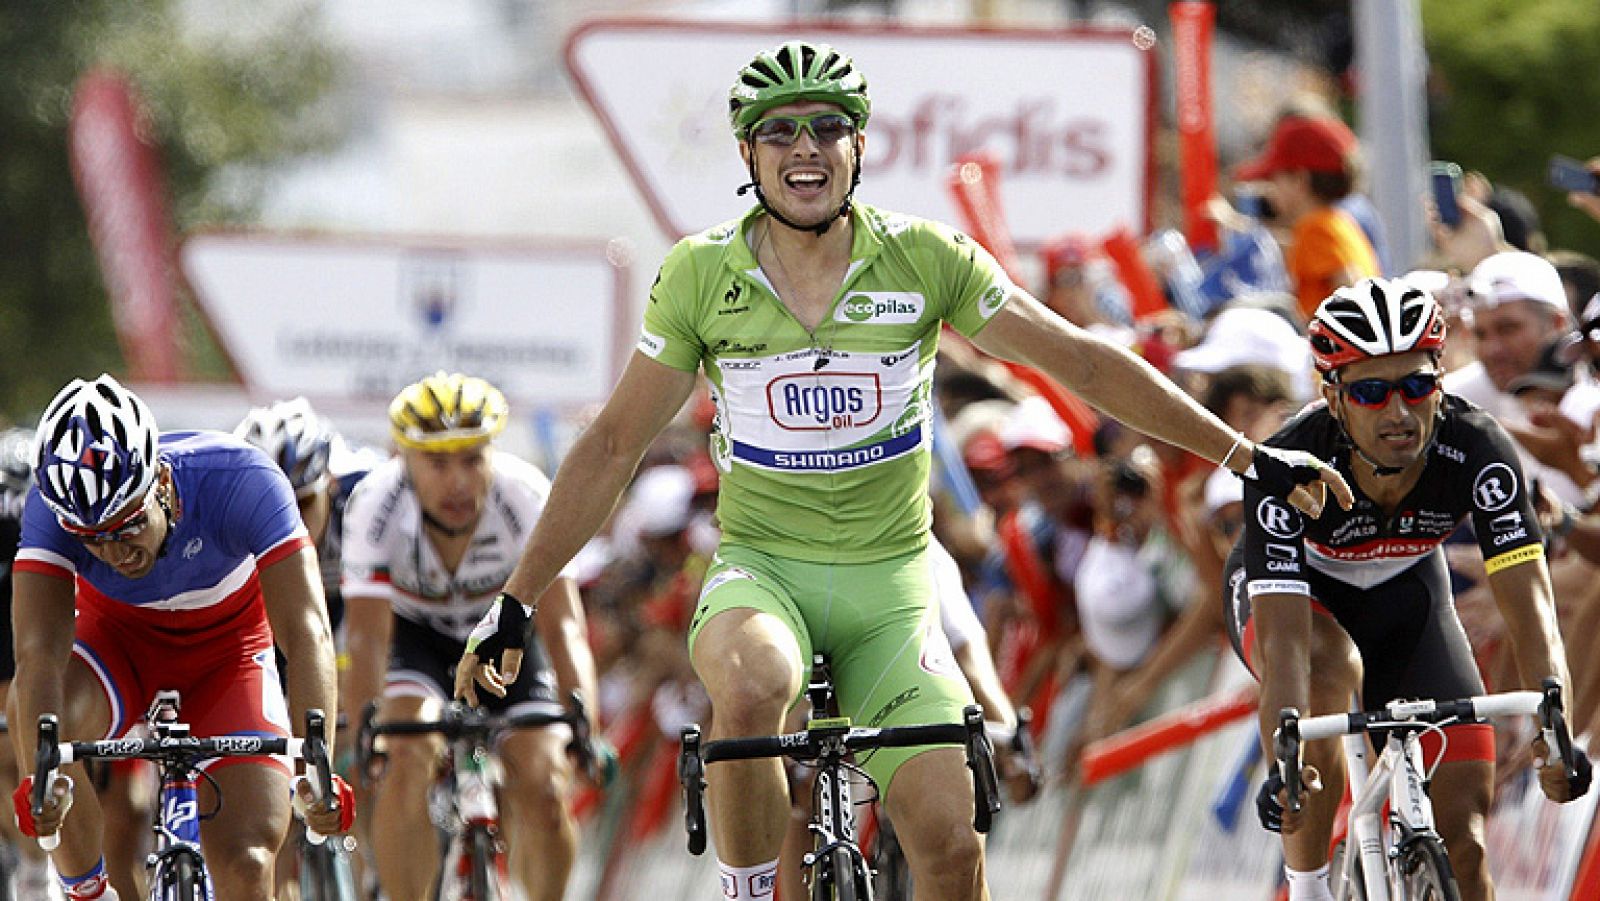 El alemán John Degenkolb (Argos Shimano),  ha ganado la décima etapa de la Vuelta disputada entre Ponteareas y Sanxenxo, de 190 kilómetros, en la que el español Joaquim "Purito" Rodríguez mantuvo el maillot rojo de líder. Degenkolb logró su cuarta vi